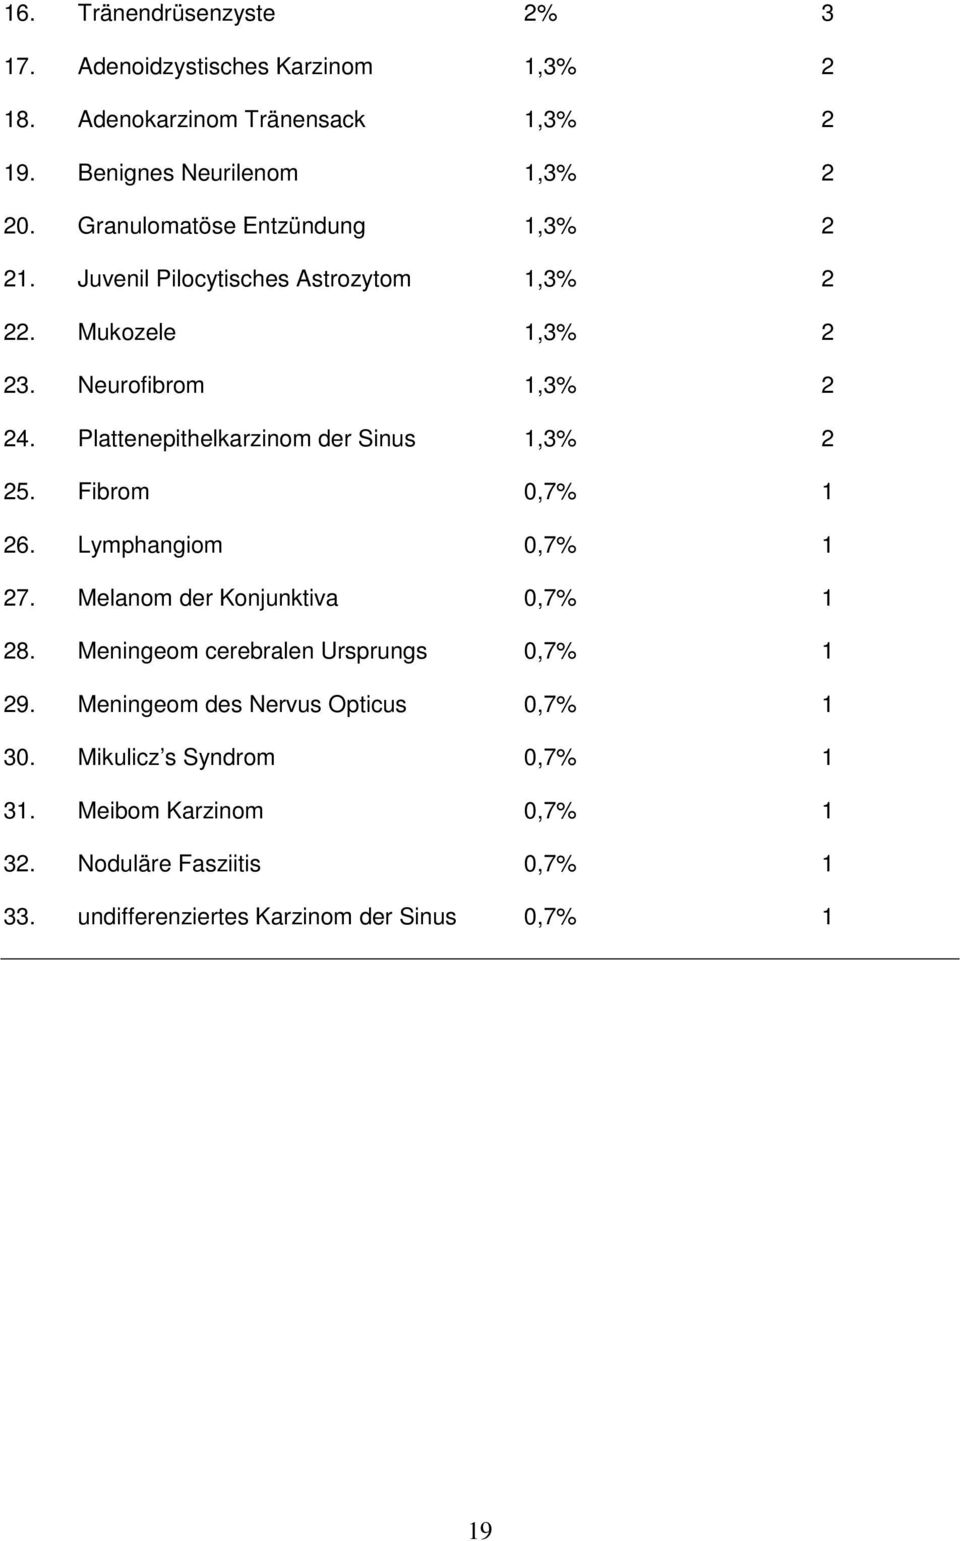 Plattenepithelkarzinom der Sinus 1,3% 2 25. Fibrom 0,7% 1 26. Lymphangiom 0,7% 1 27. Melanom der Konjunktiva 0,7% 1 28.